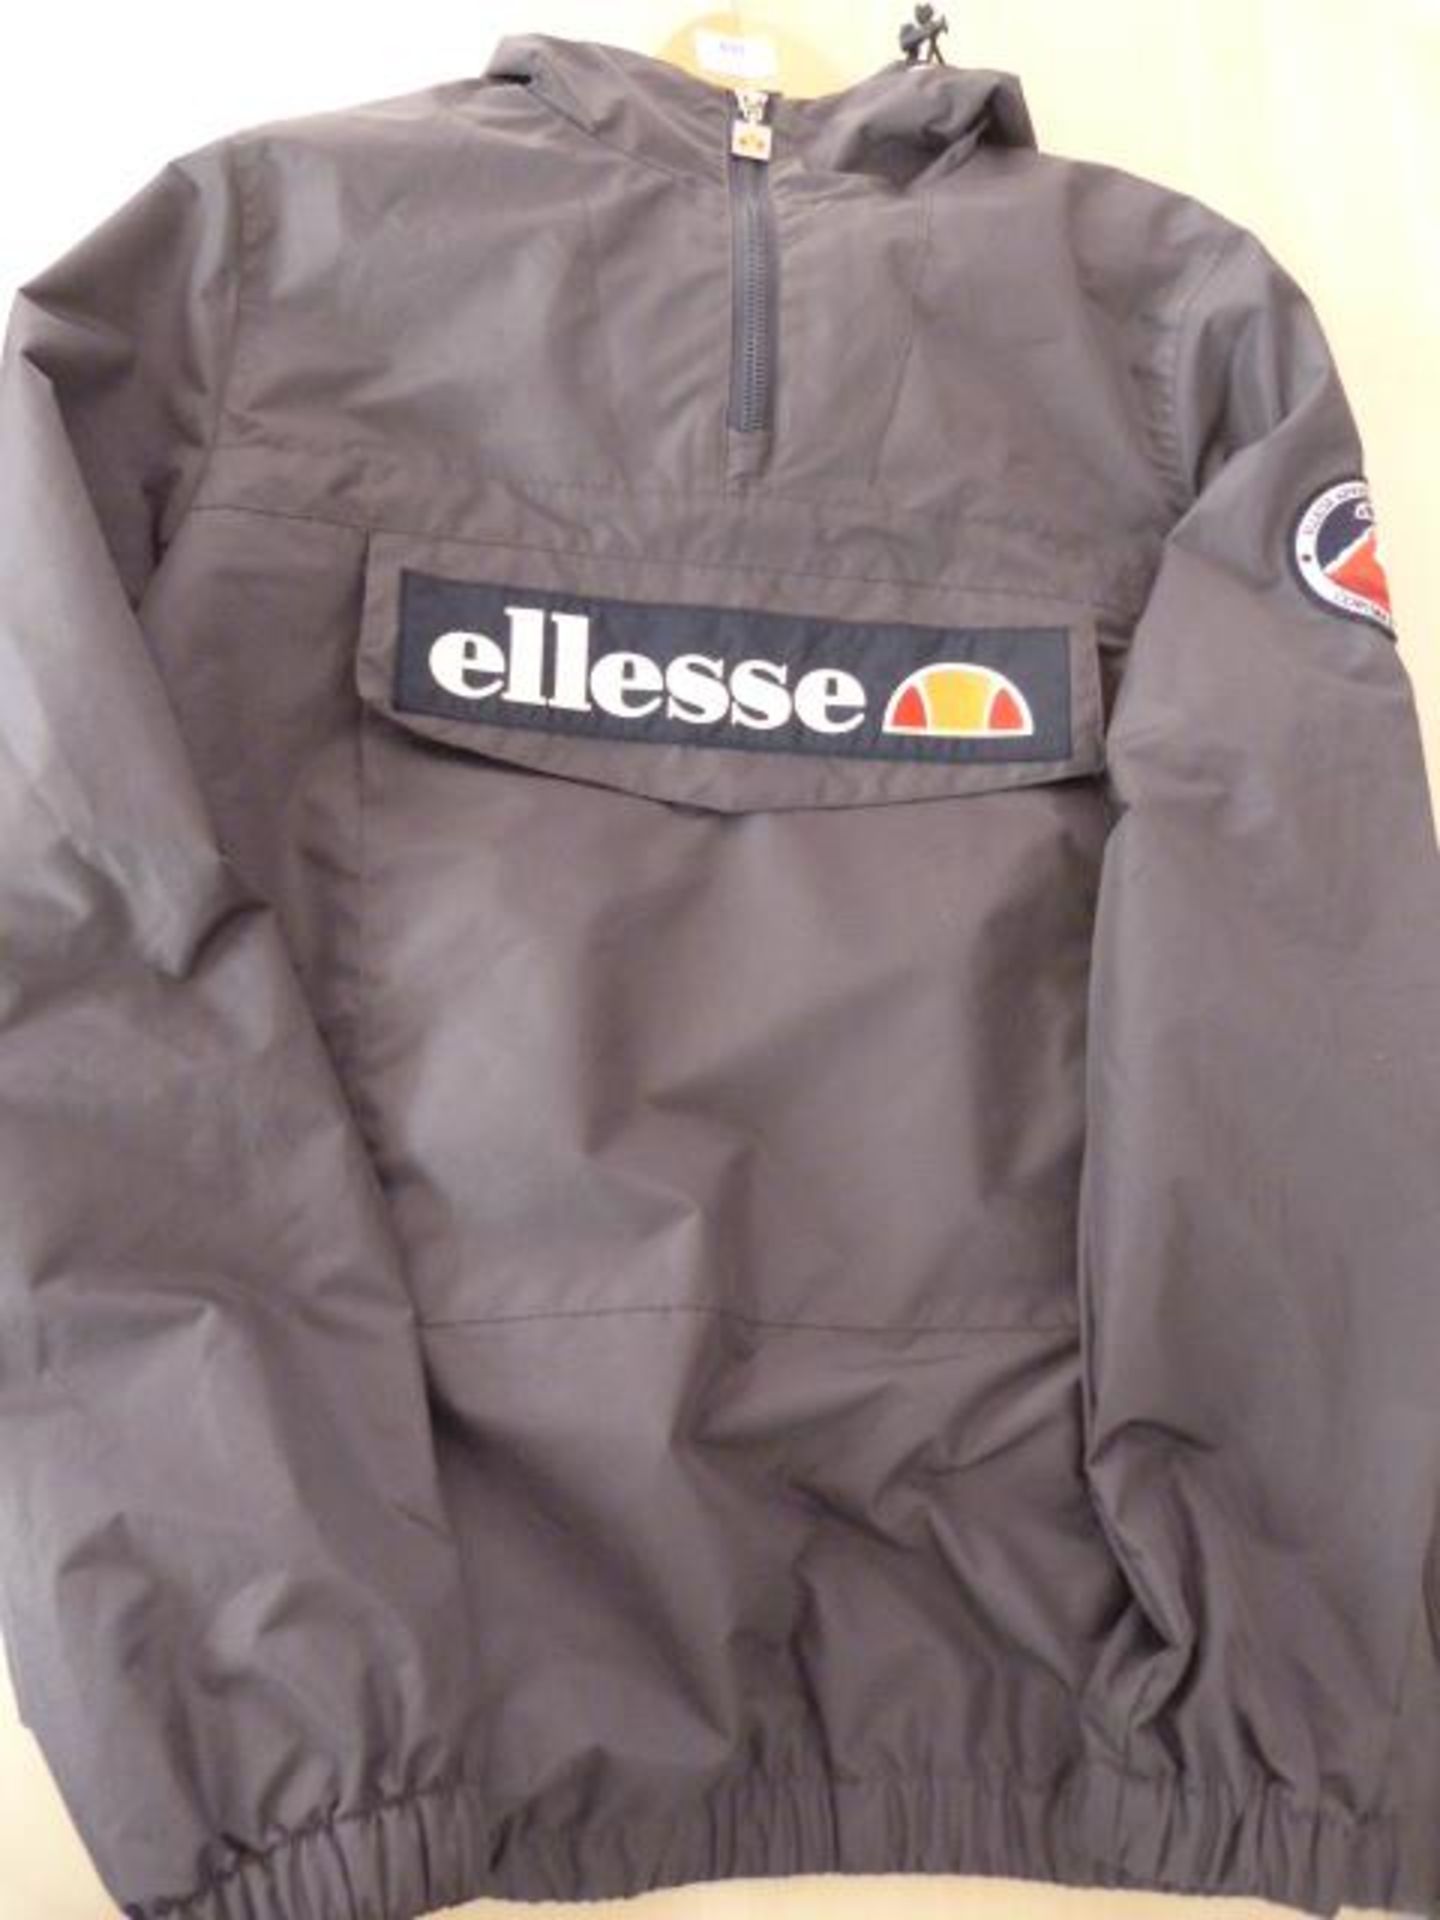 *Ellesse Grey Mont Jacket Size: Medium